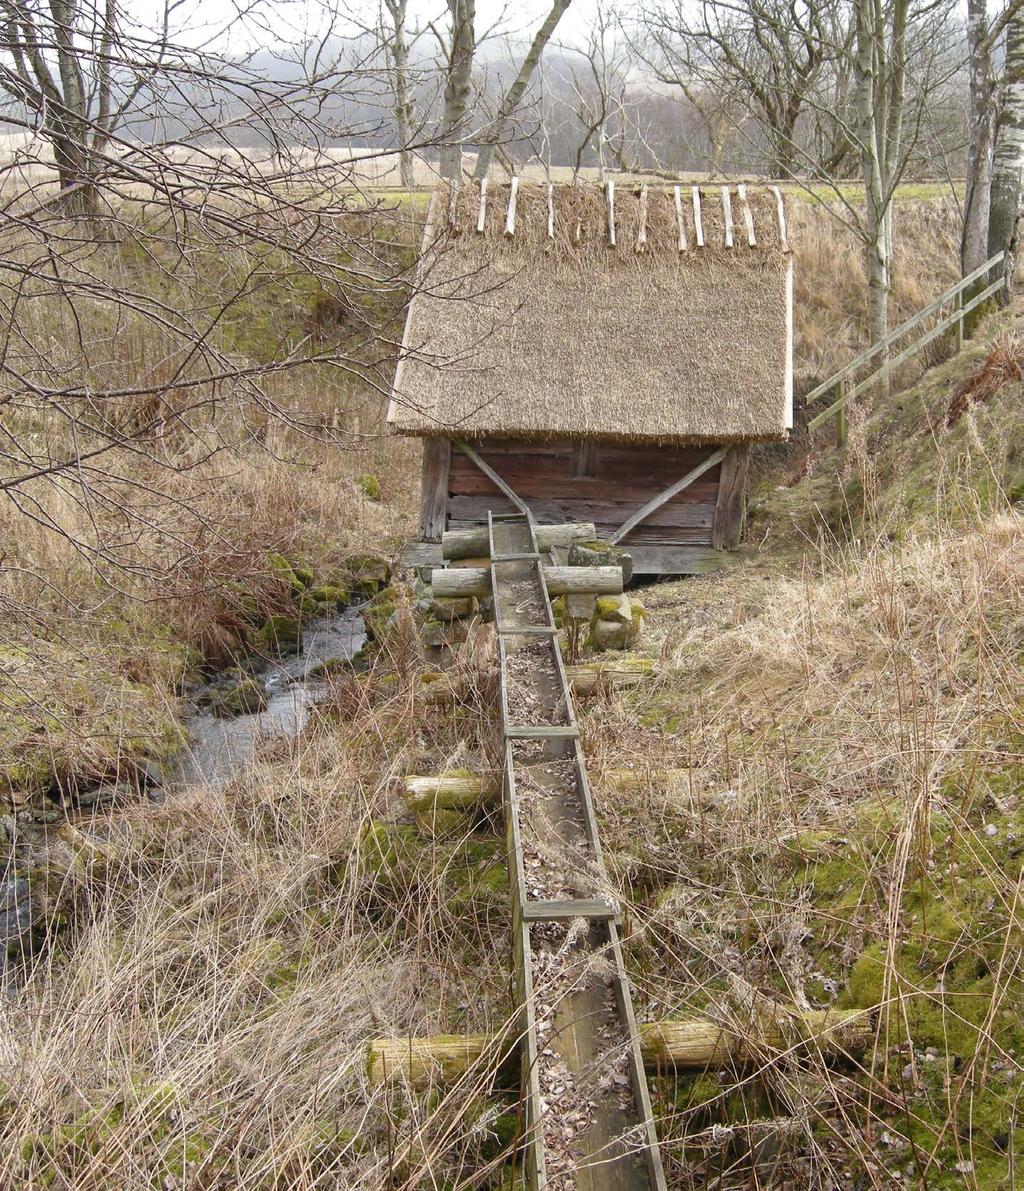 I Hallands län har många lämningar efter små vattendrivna skvaltkvarnar inventerats inom projektet. Det finns idag mycket få helt bevarade skvaltkvarnar.